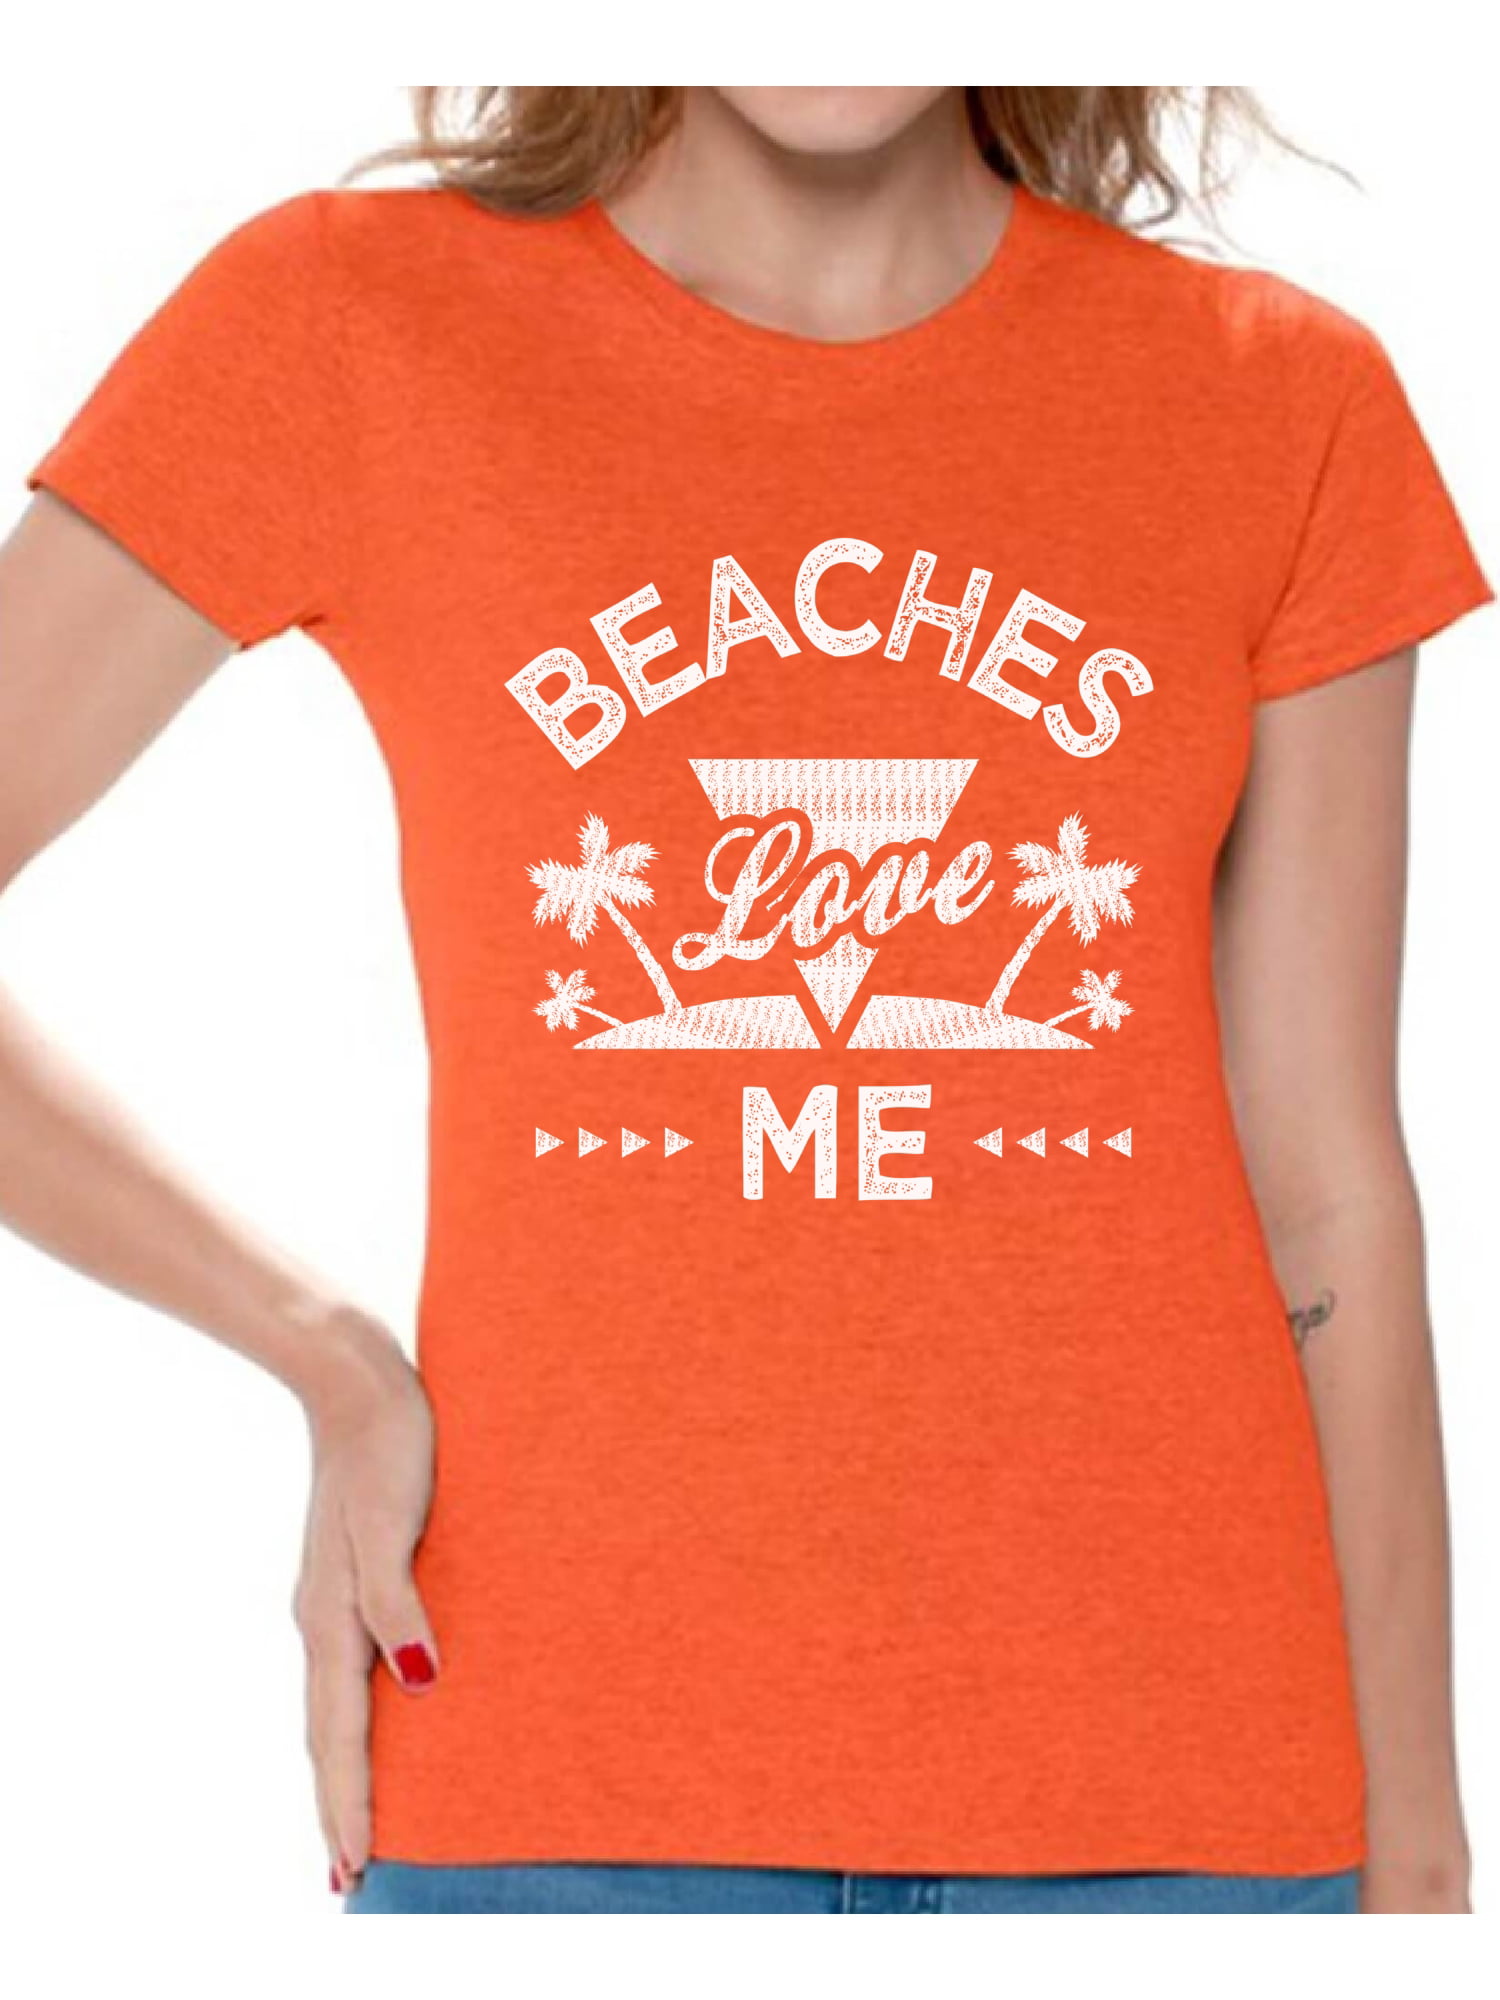 Awkward Styles  Awkward Styles Beaches Love Me Tshirt for Women Beach